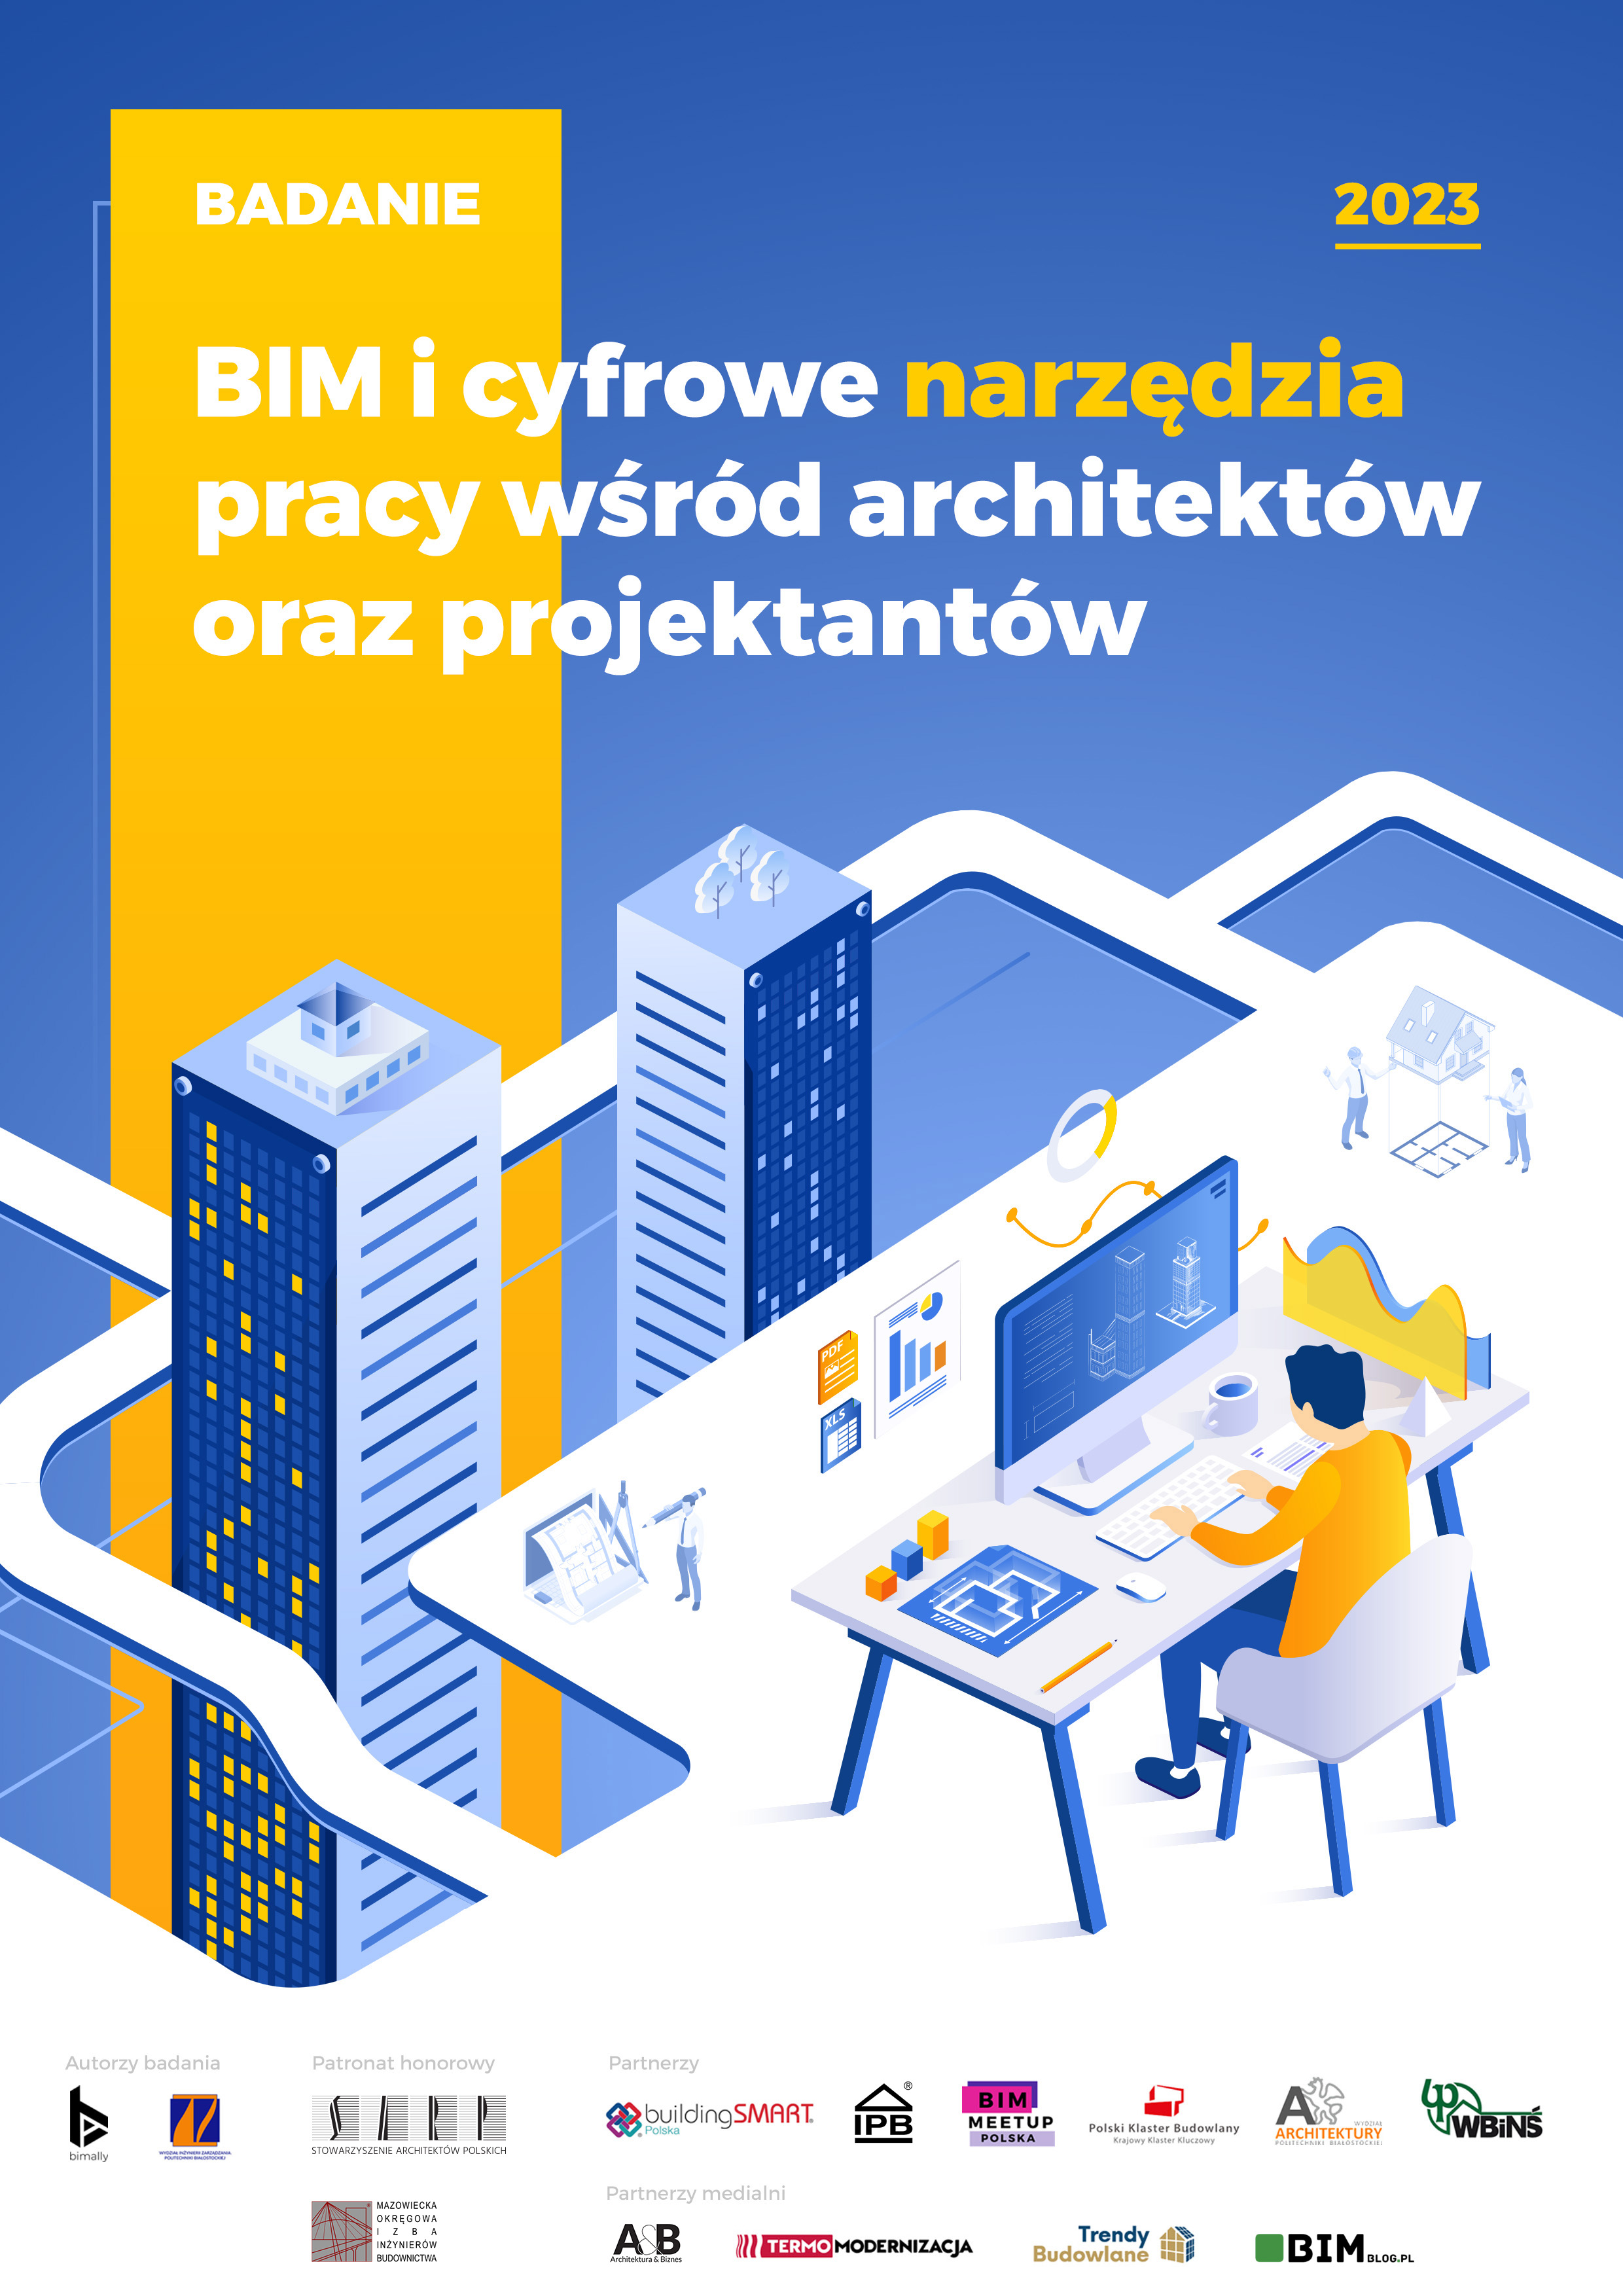 BIM i cyfrowe narzędzia pracy wśród architektów oraz projektantów